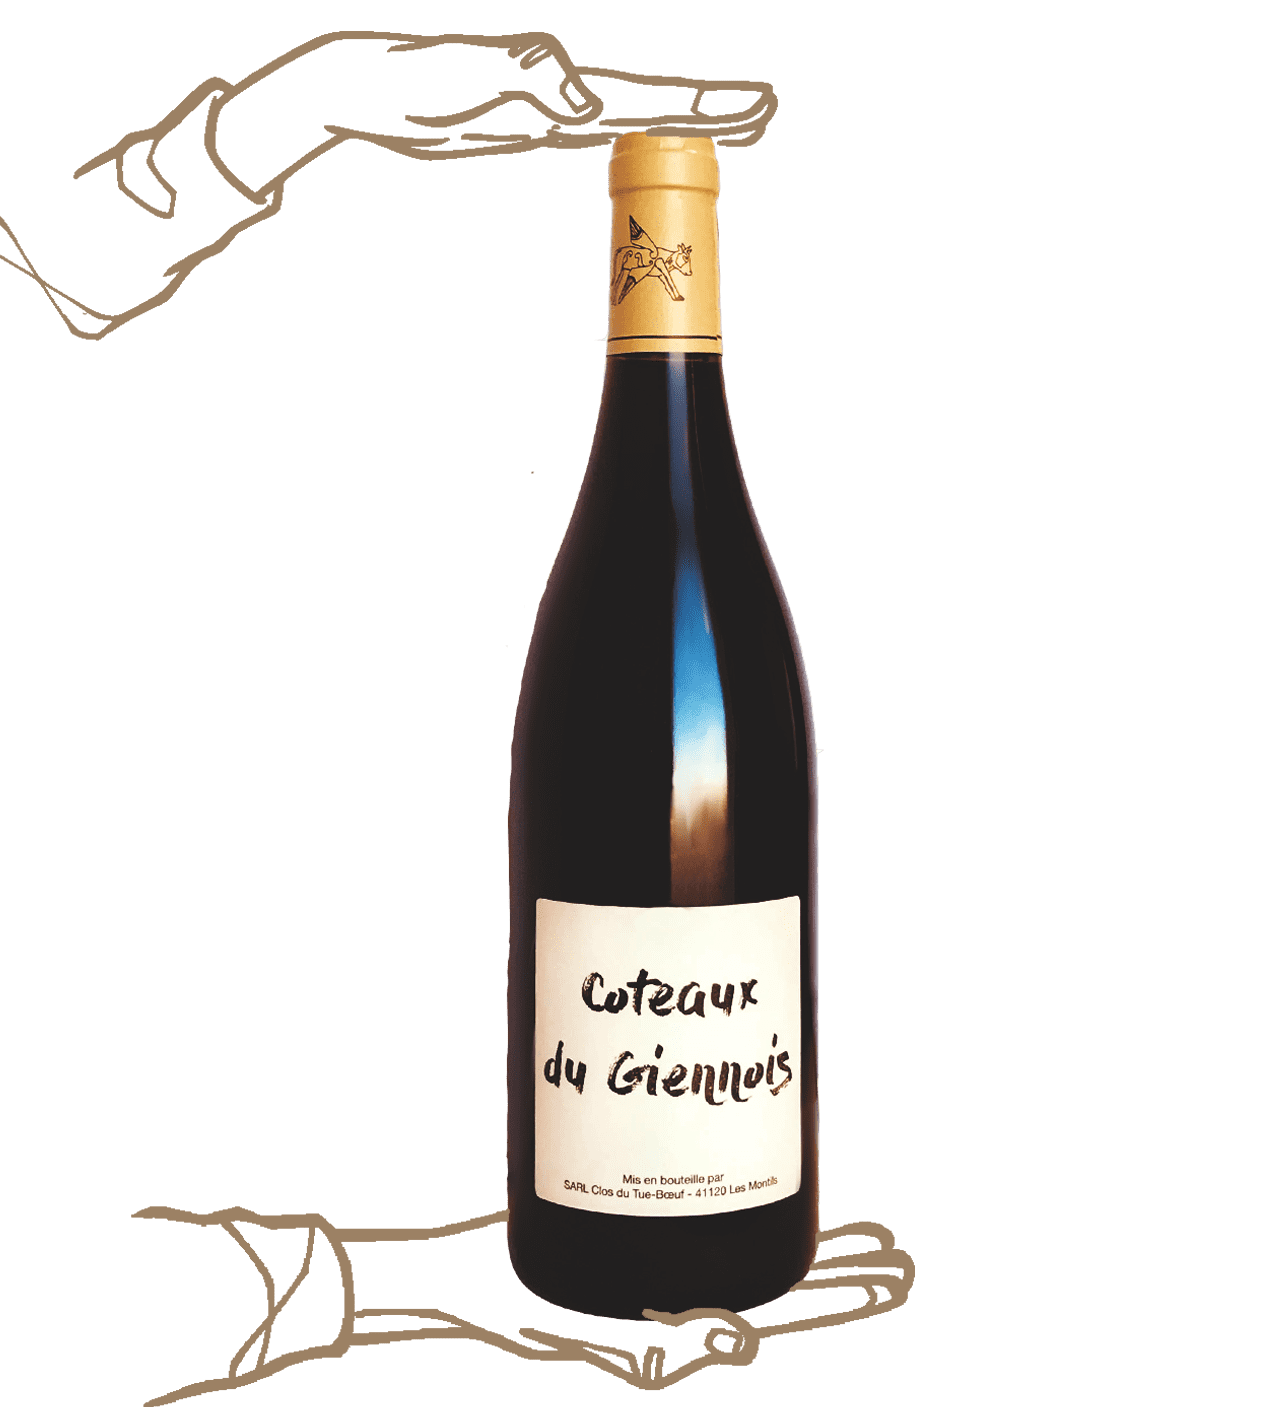 Coteaux de giennois du Clos du tue boeuf est un vin naturel de Loire